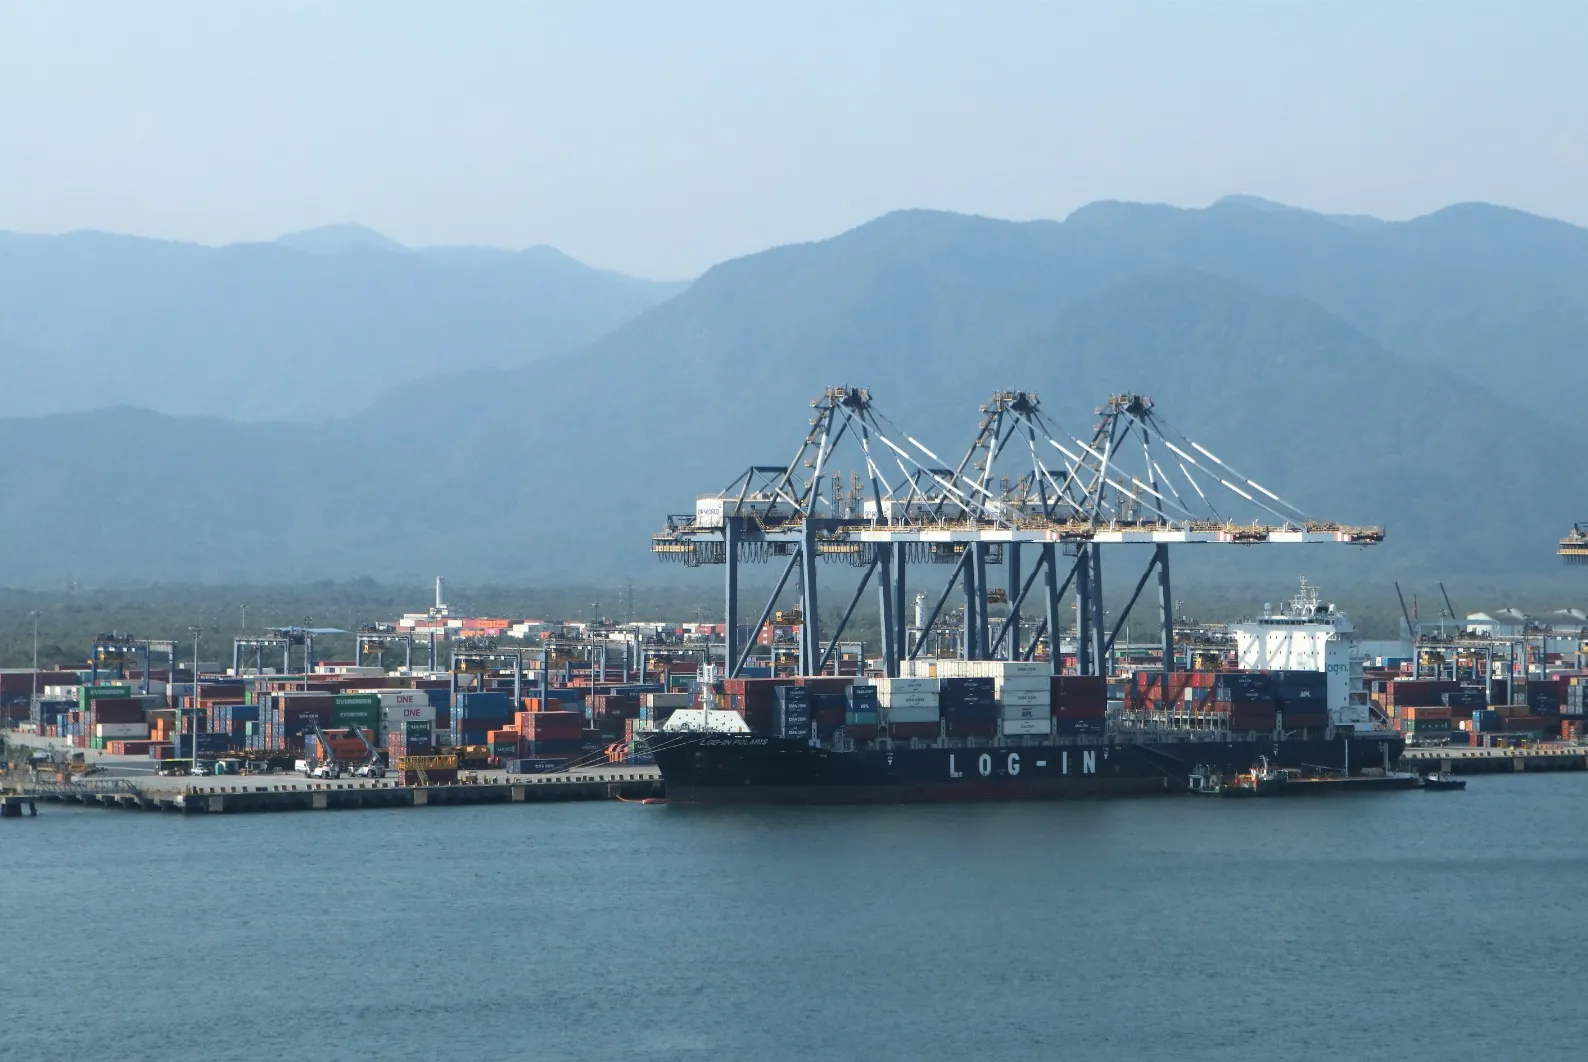 Governo Federal quer criar, em cinco anos, mais de 30 portos no Brasil para dar maior vazão às exportações. Para isso, pretende aumentar a parceria bilateral com outros países